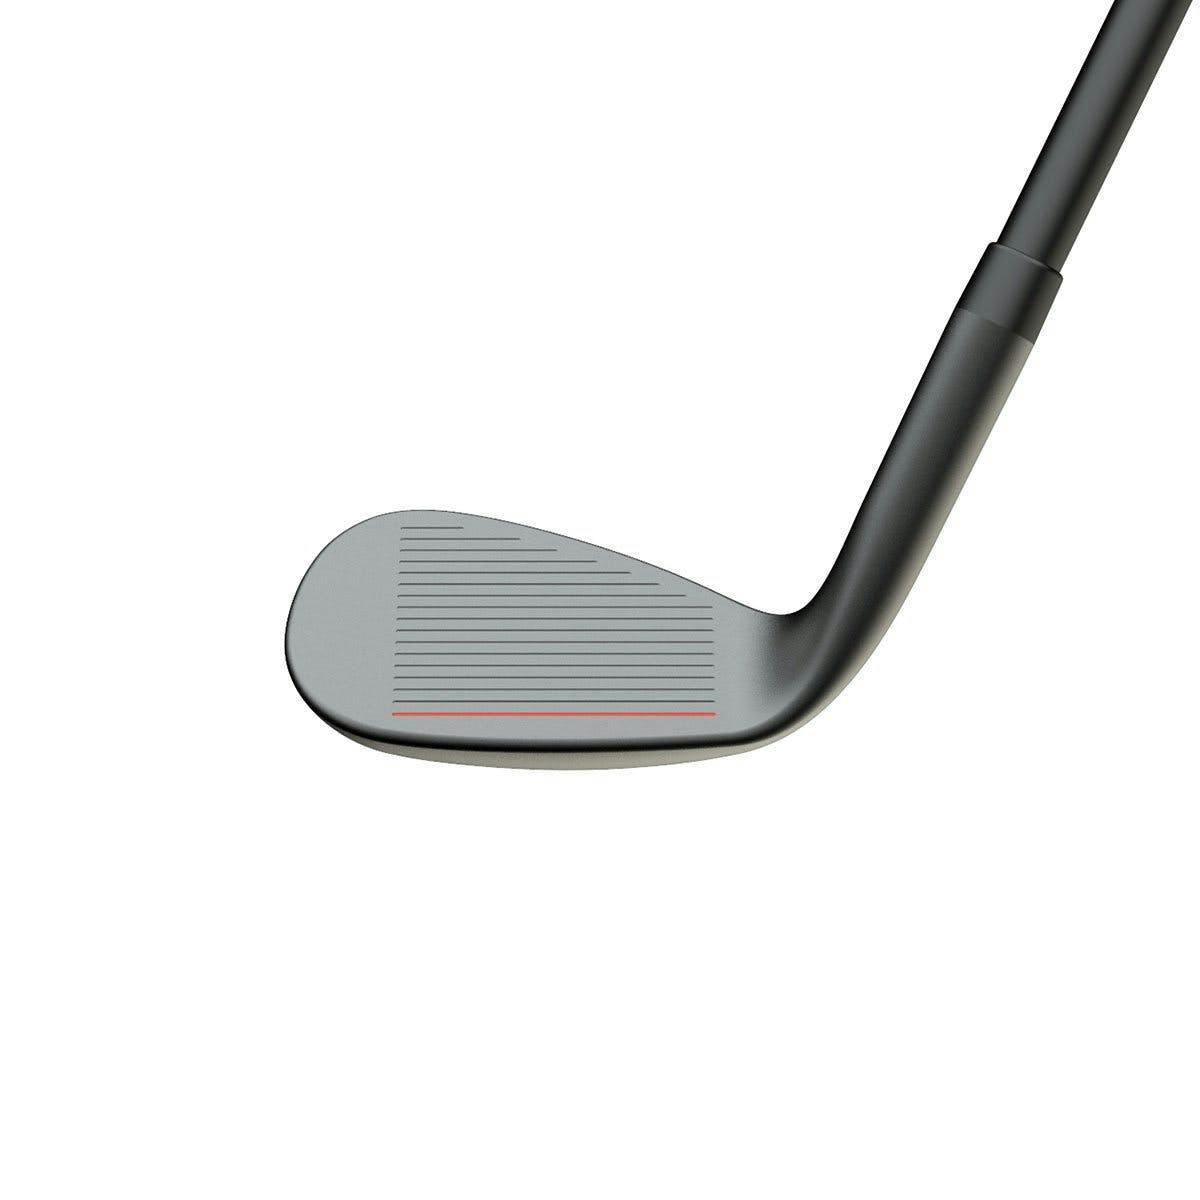 Stix Golf 3-Piece Wedge Set (52°, 56°, 60°) · Left handed · Graphite · Stiff · -0.5" (Your Height: 5'4" - 5'7")